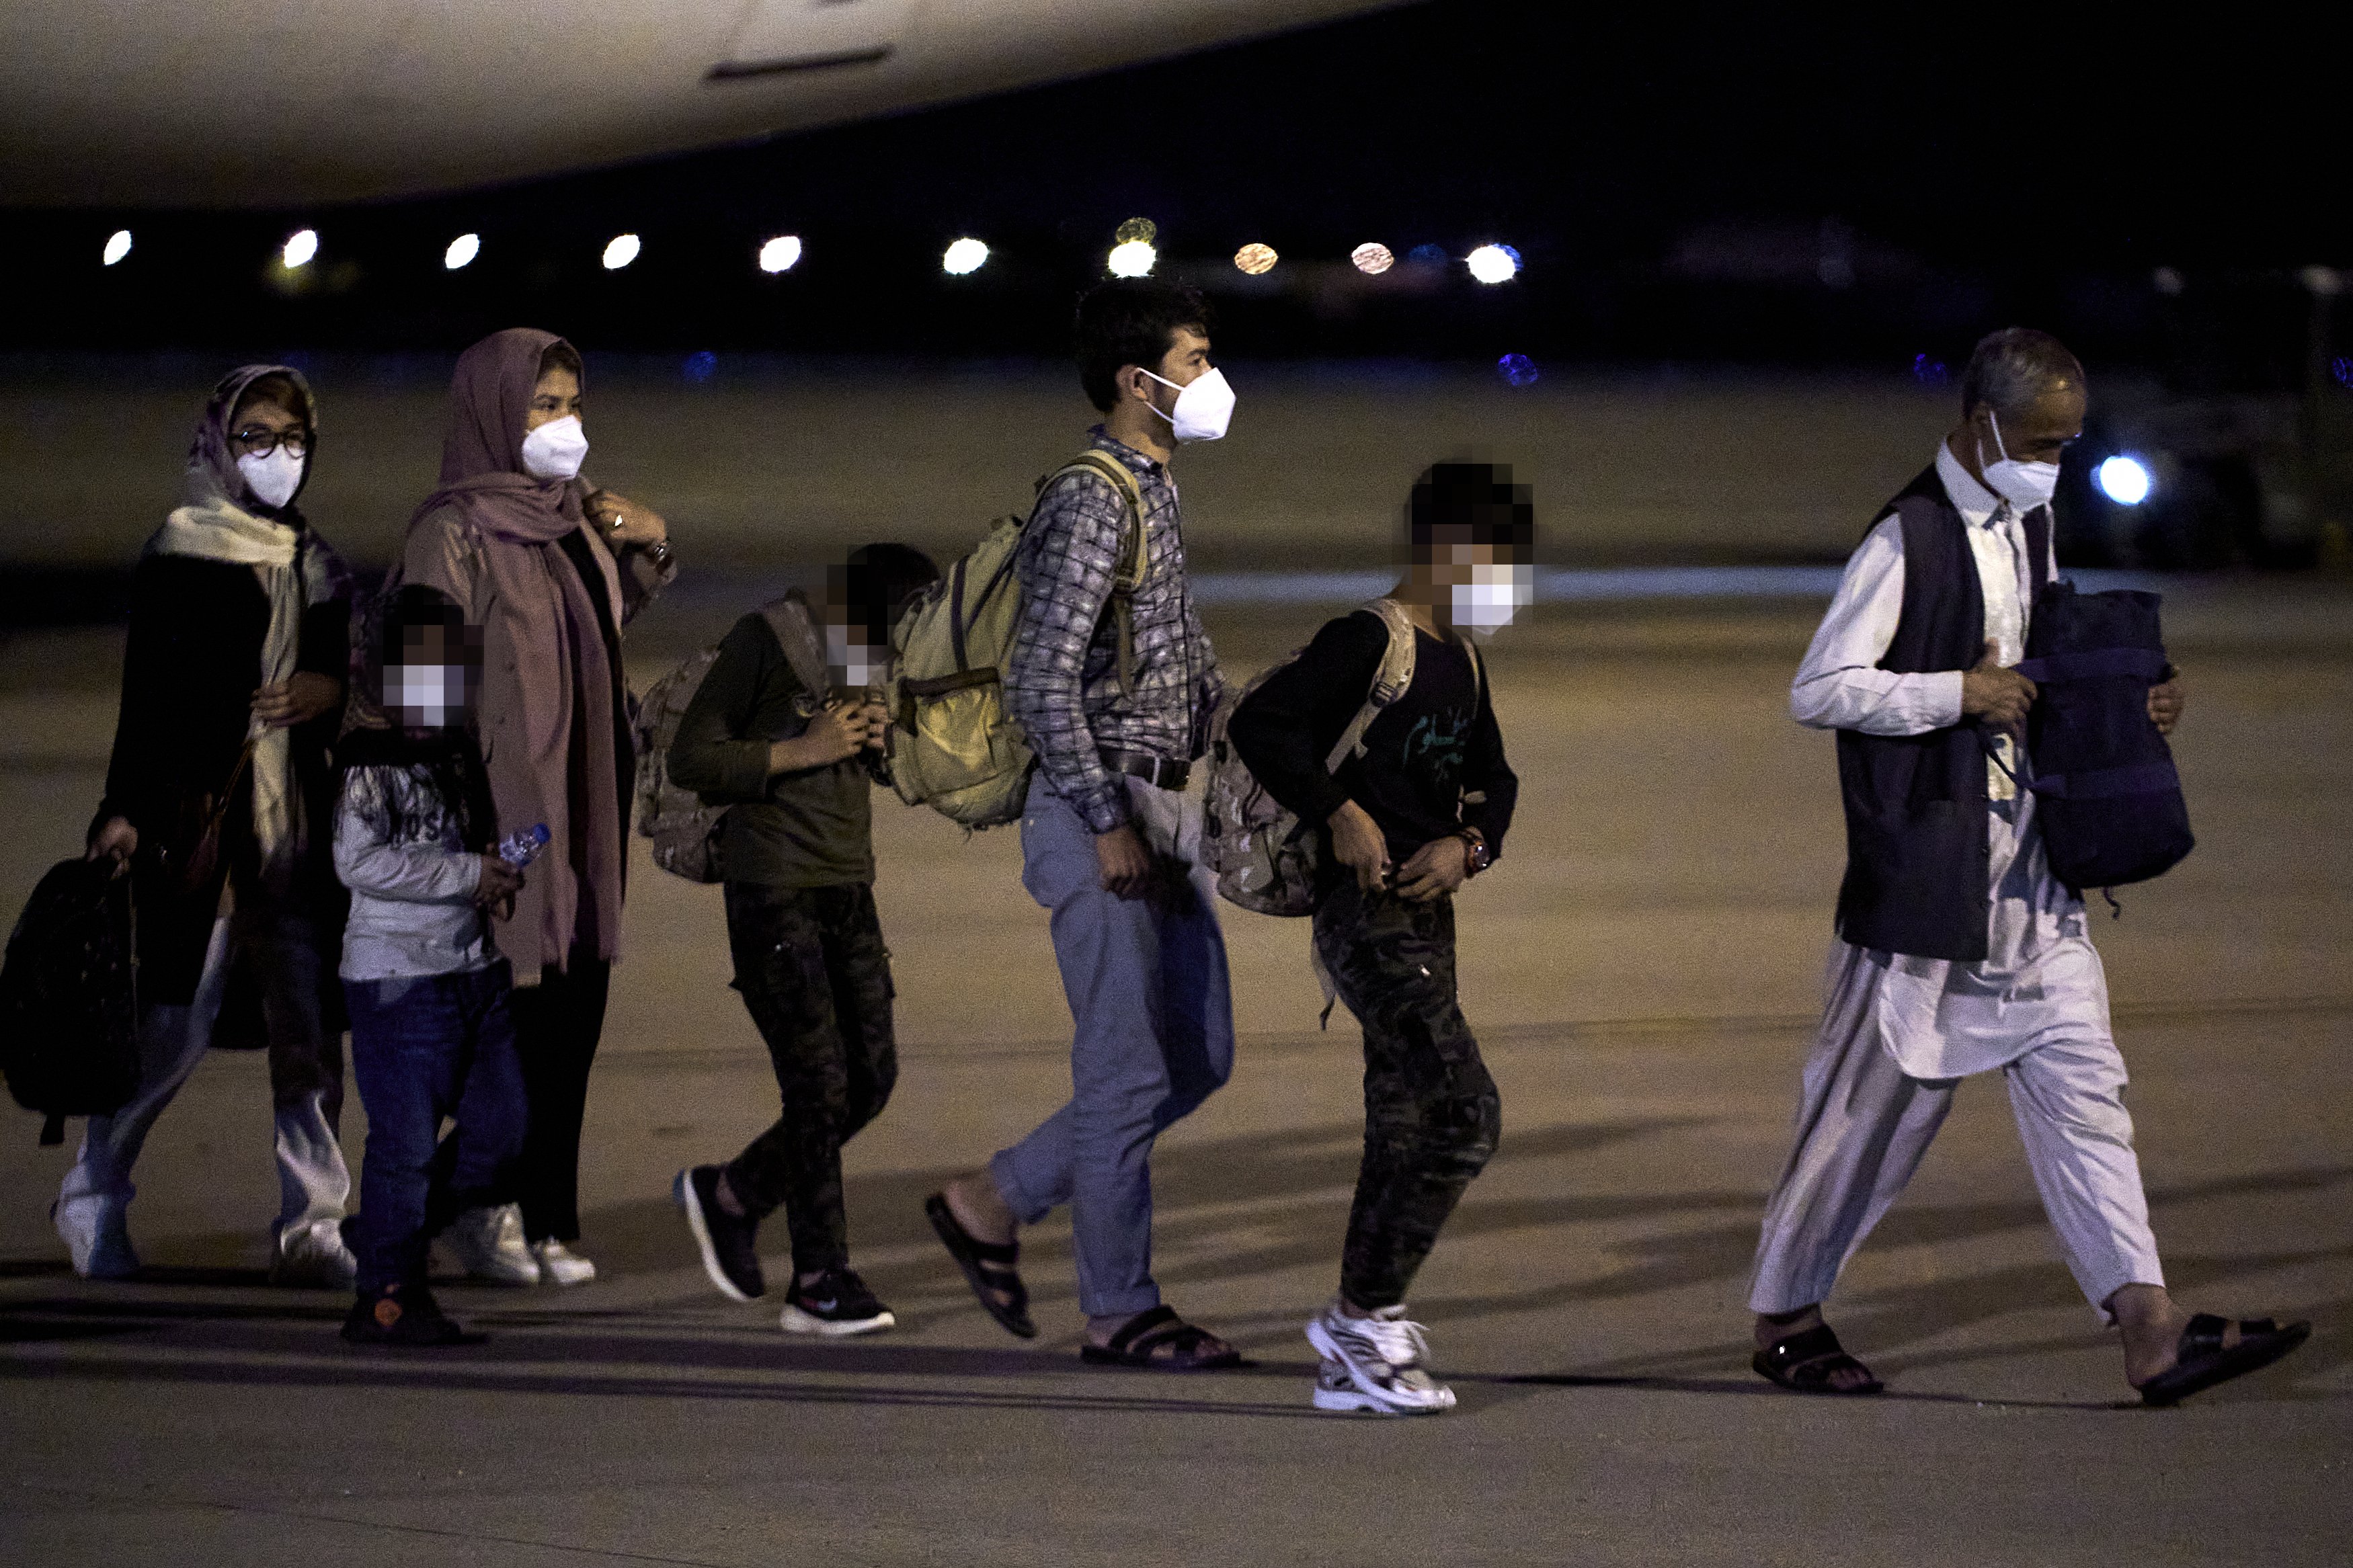 294 excol·laboradors afganesos i les seves famílies arriben a l'aeroport de Torrejón